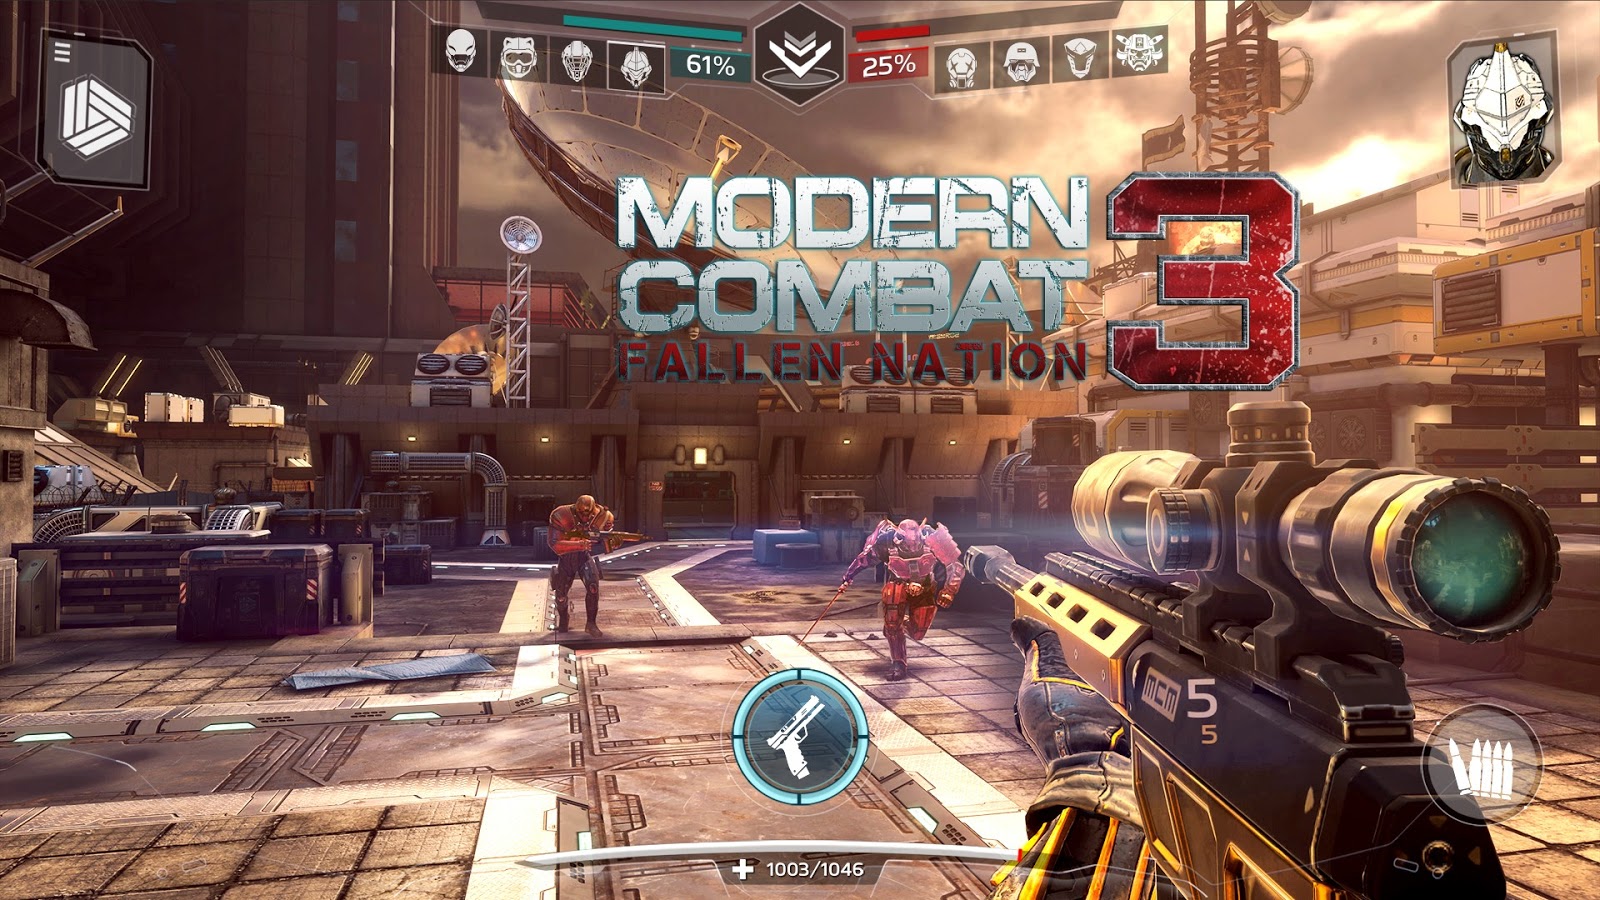 modern combat 3 concept art